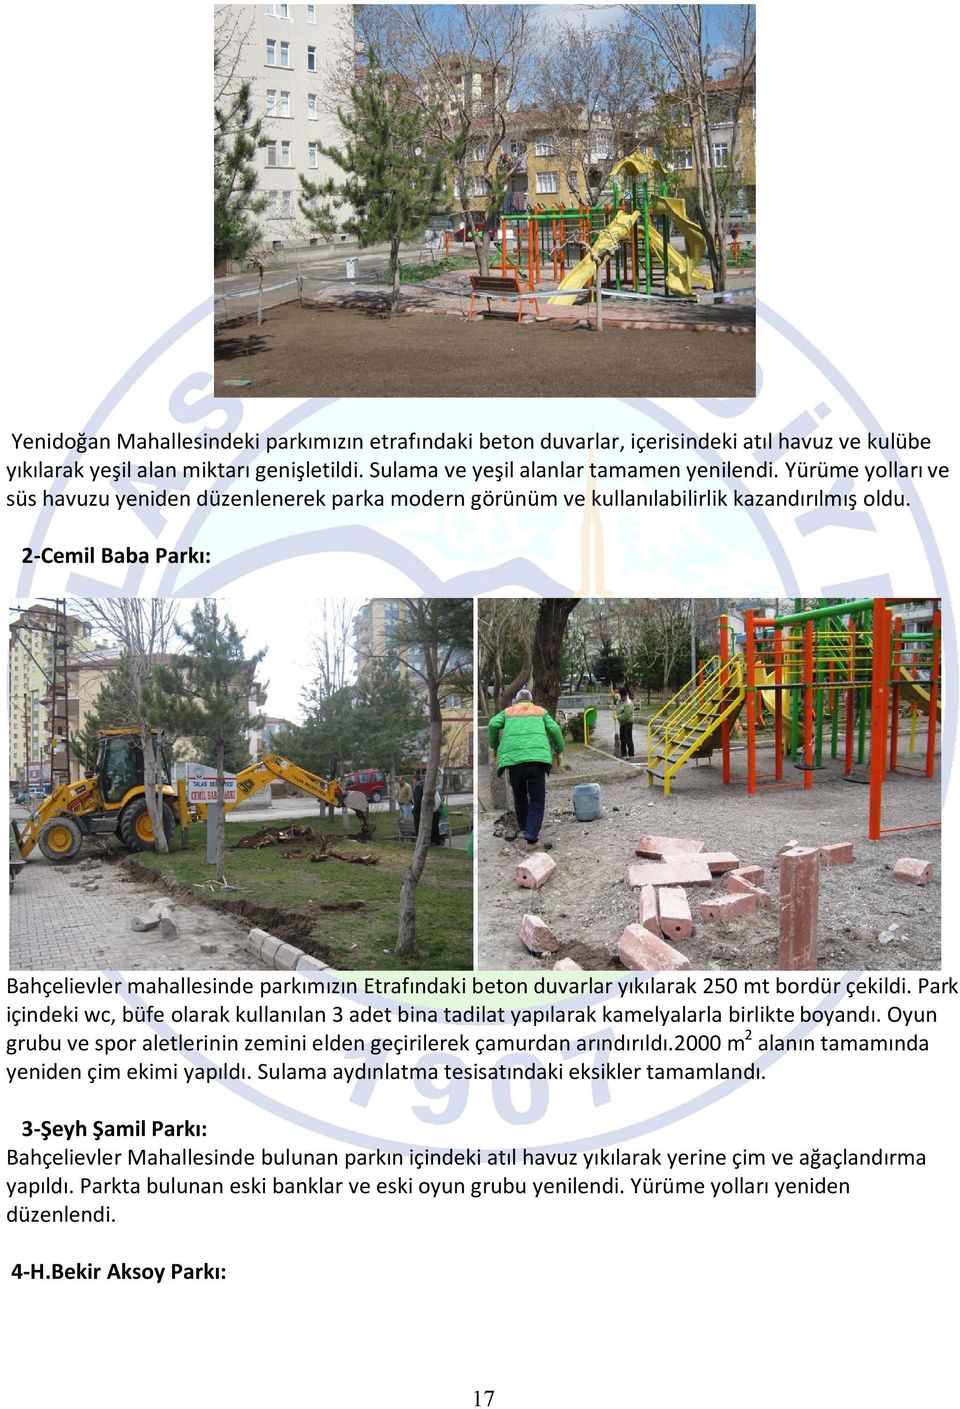 2-Cemil Baba Parkı: Bahçelievler mahallesinde parkımızın Etrafındaki beton duvarlar yıkılarak 250 mt bordür çekildi.